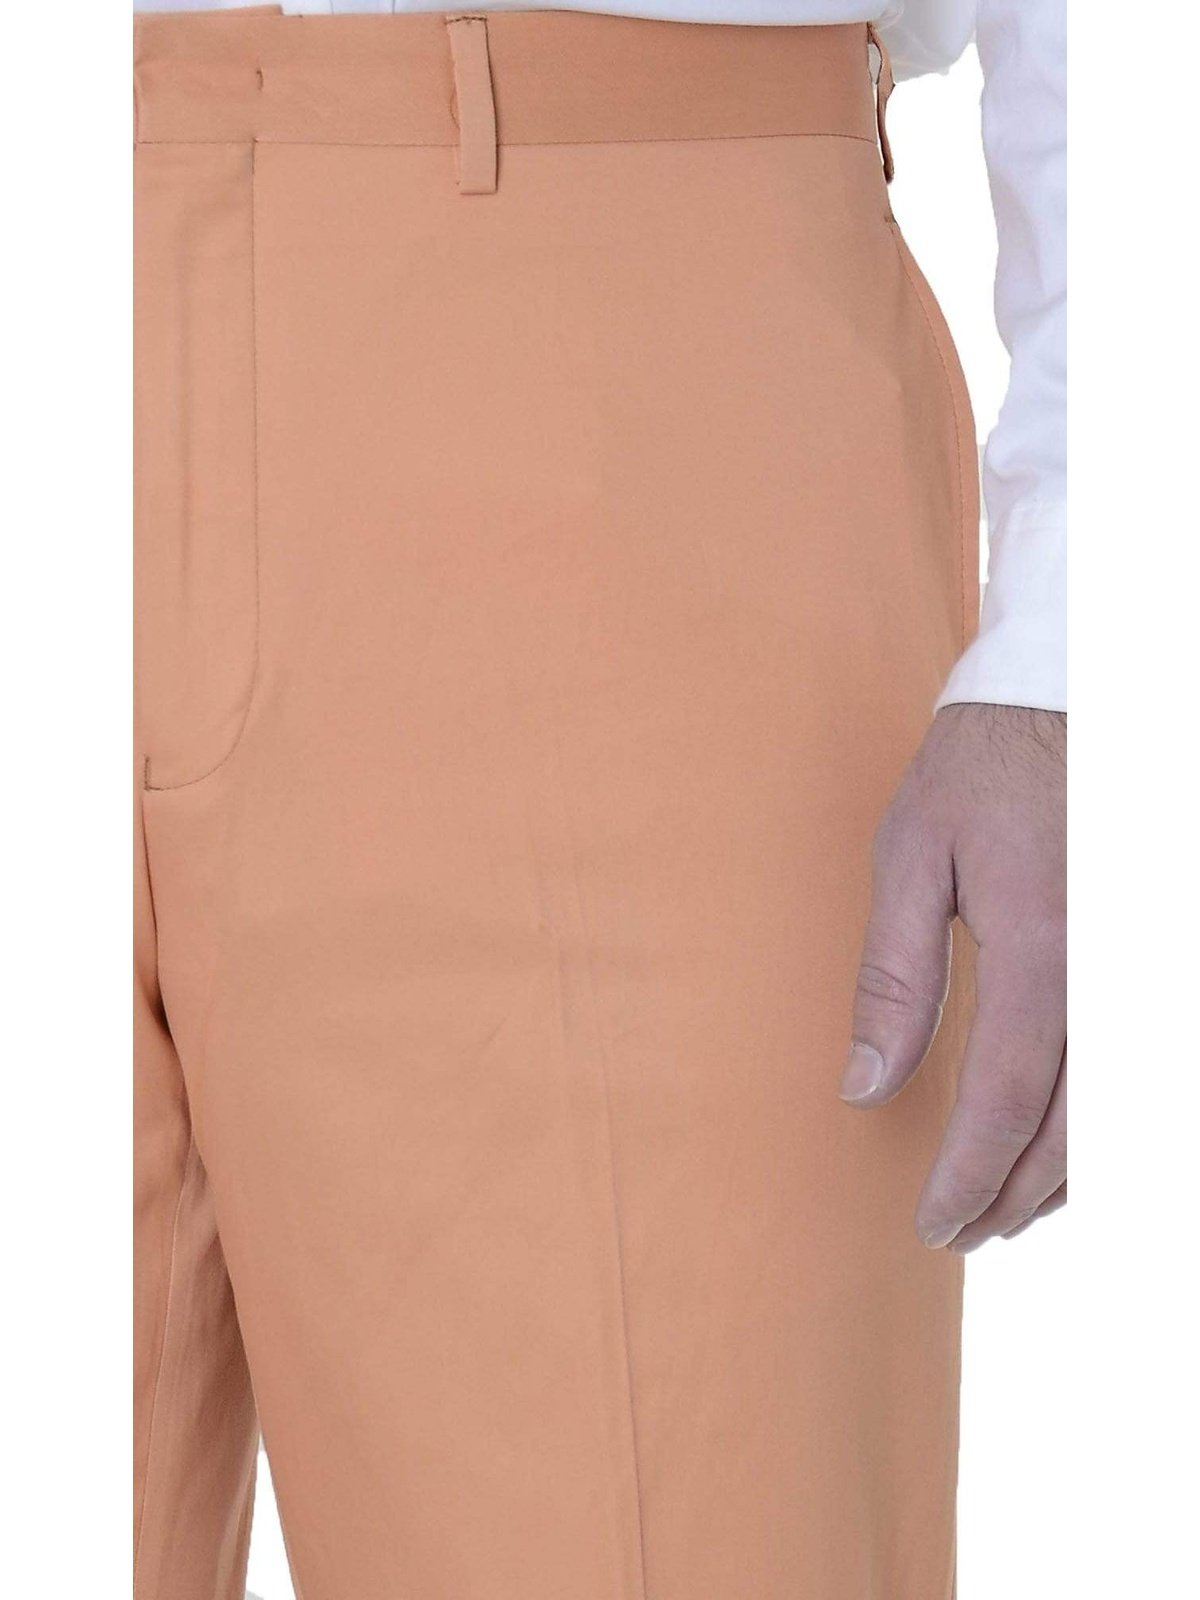 Ralph Lauren Silver Label Trim Fit Cantaloupe Orange Flat Front Cotton Pants - The Suit Depot